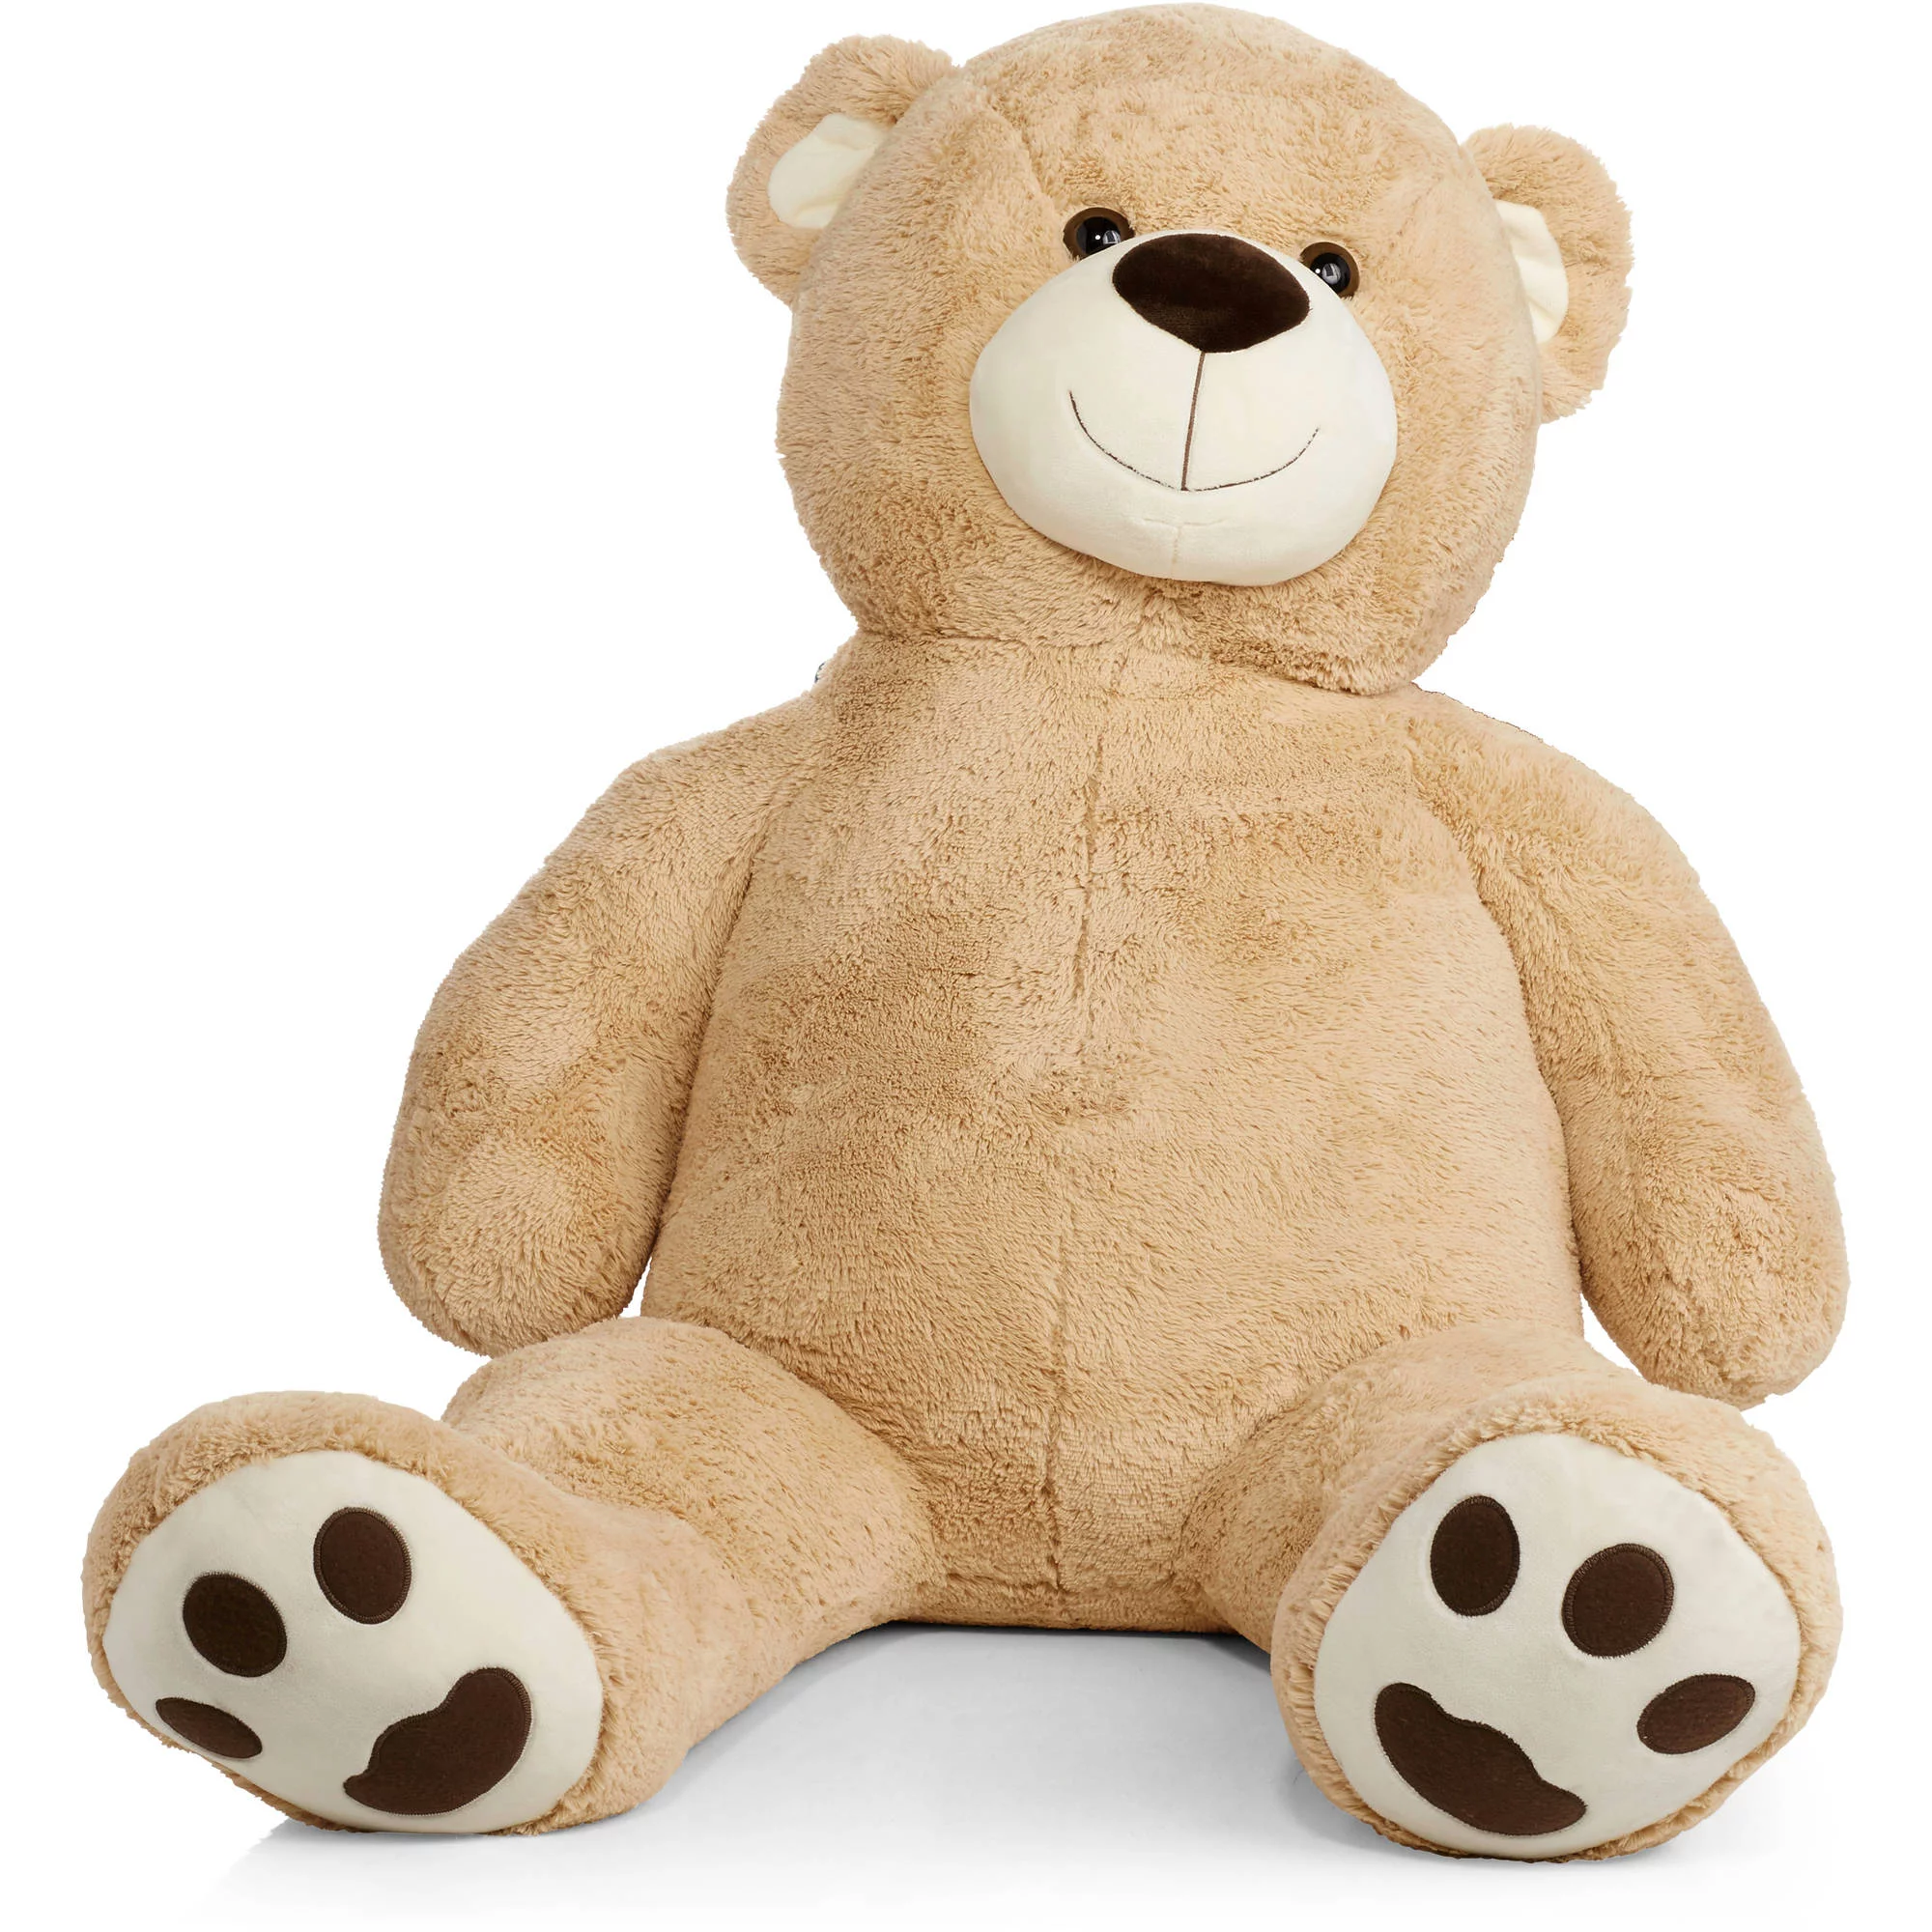 5 foot teddy bear walmart